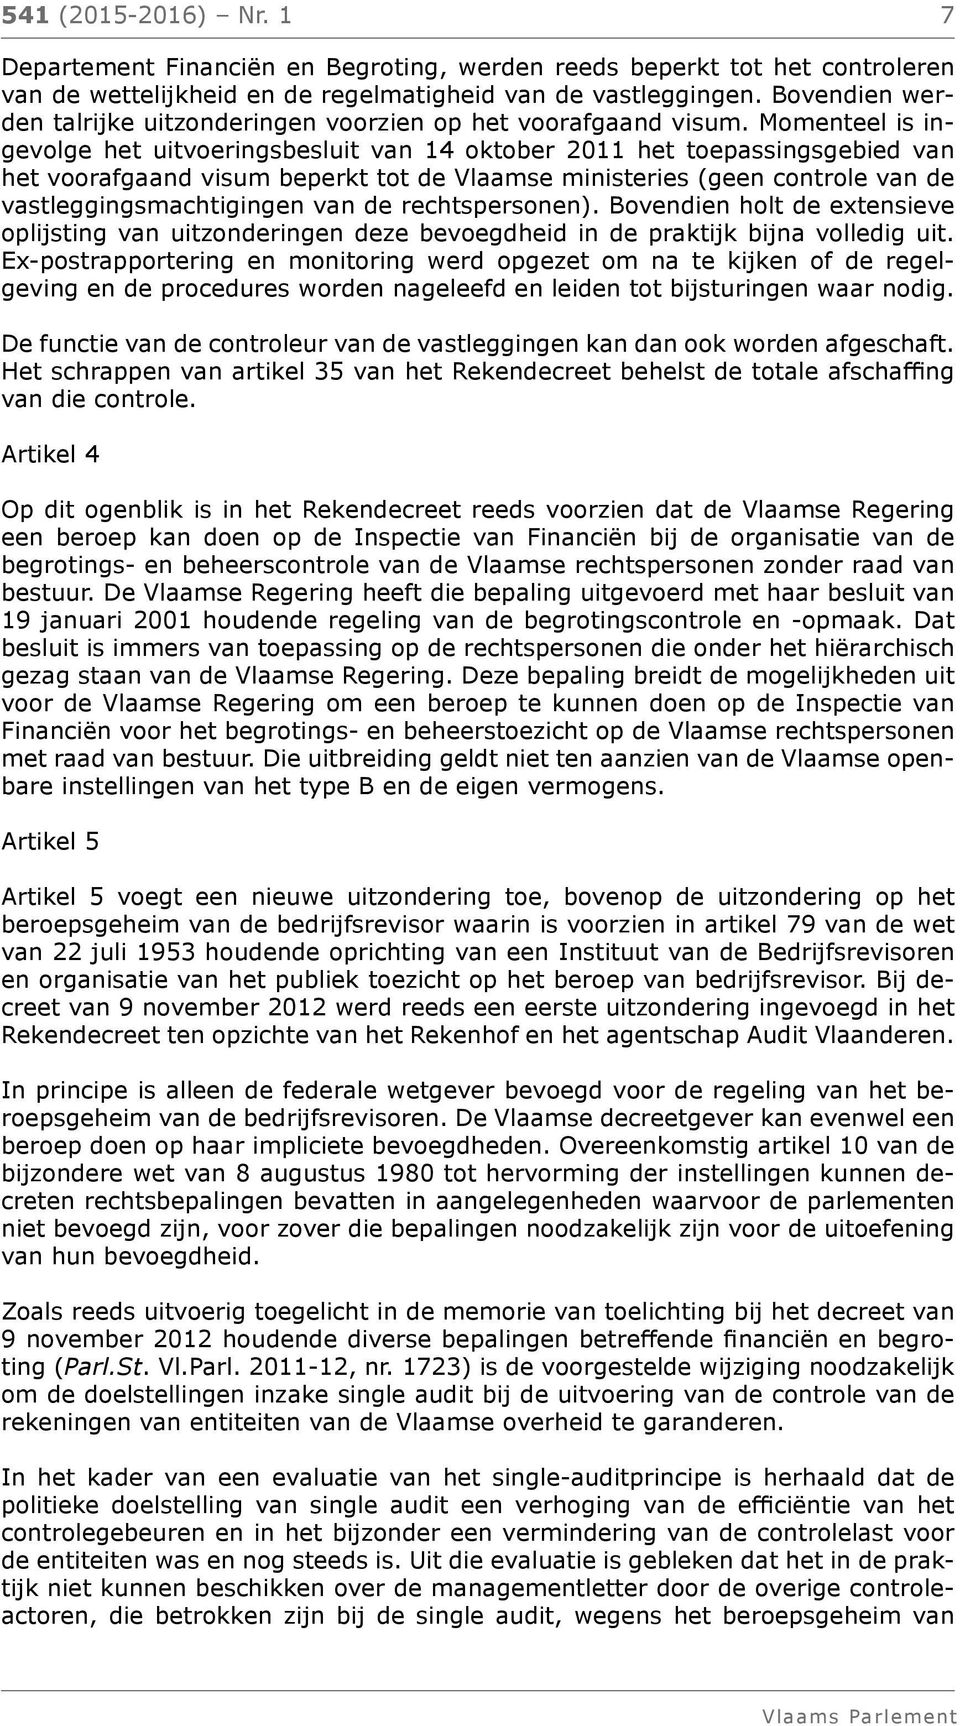 Momenteel is ingevolge het uitvoeringsbesluit van 14 oktober 2011 het toepassingsgebied van het voorafgaand visum beperkt tot de Vlaamse ministeries (geen controle van de vastleggingsmachtigingen van